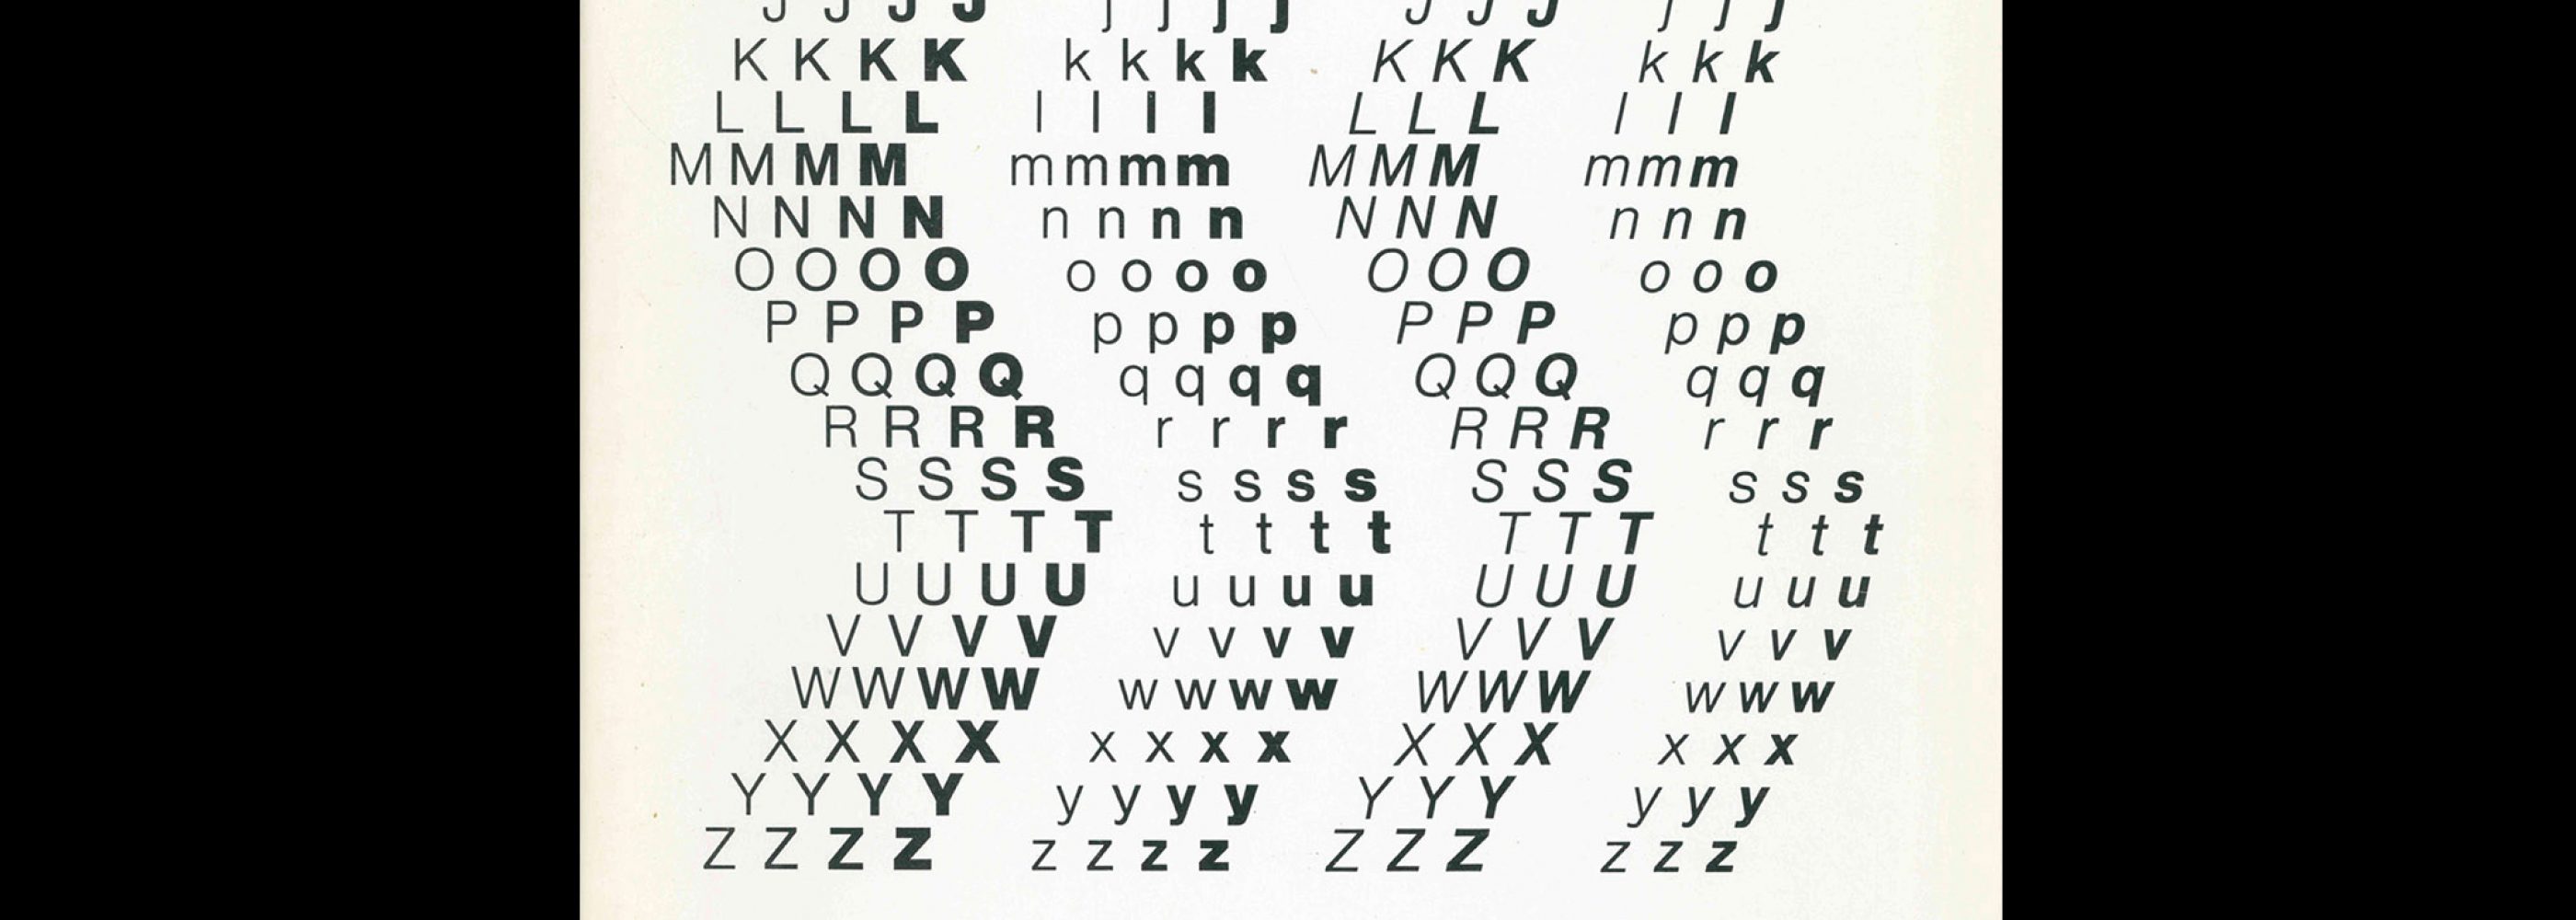 Letterproef Helvetica, Type specimen